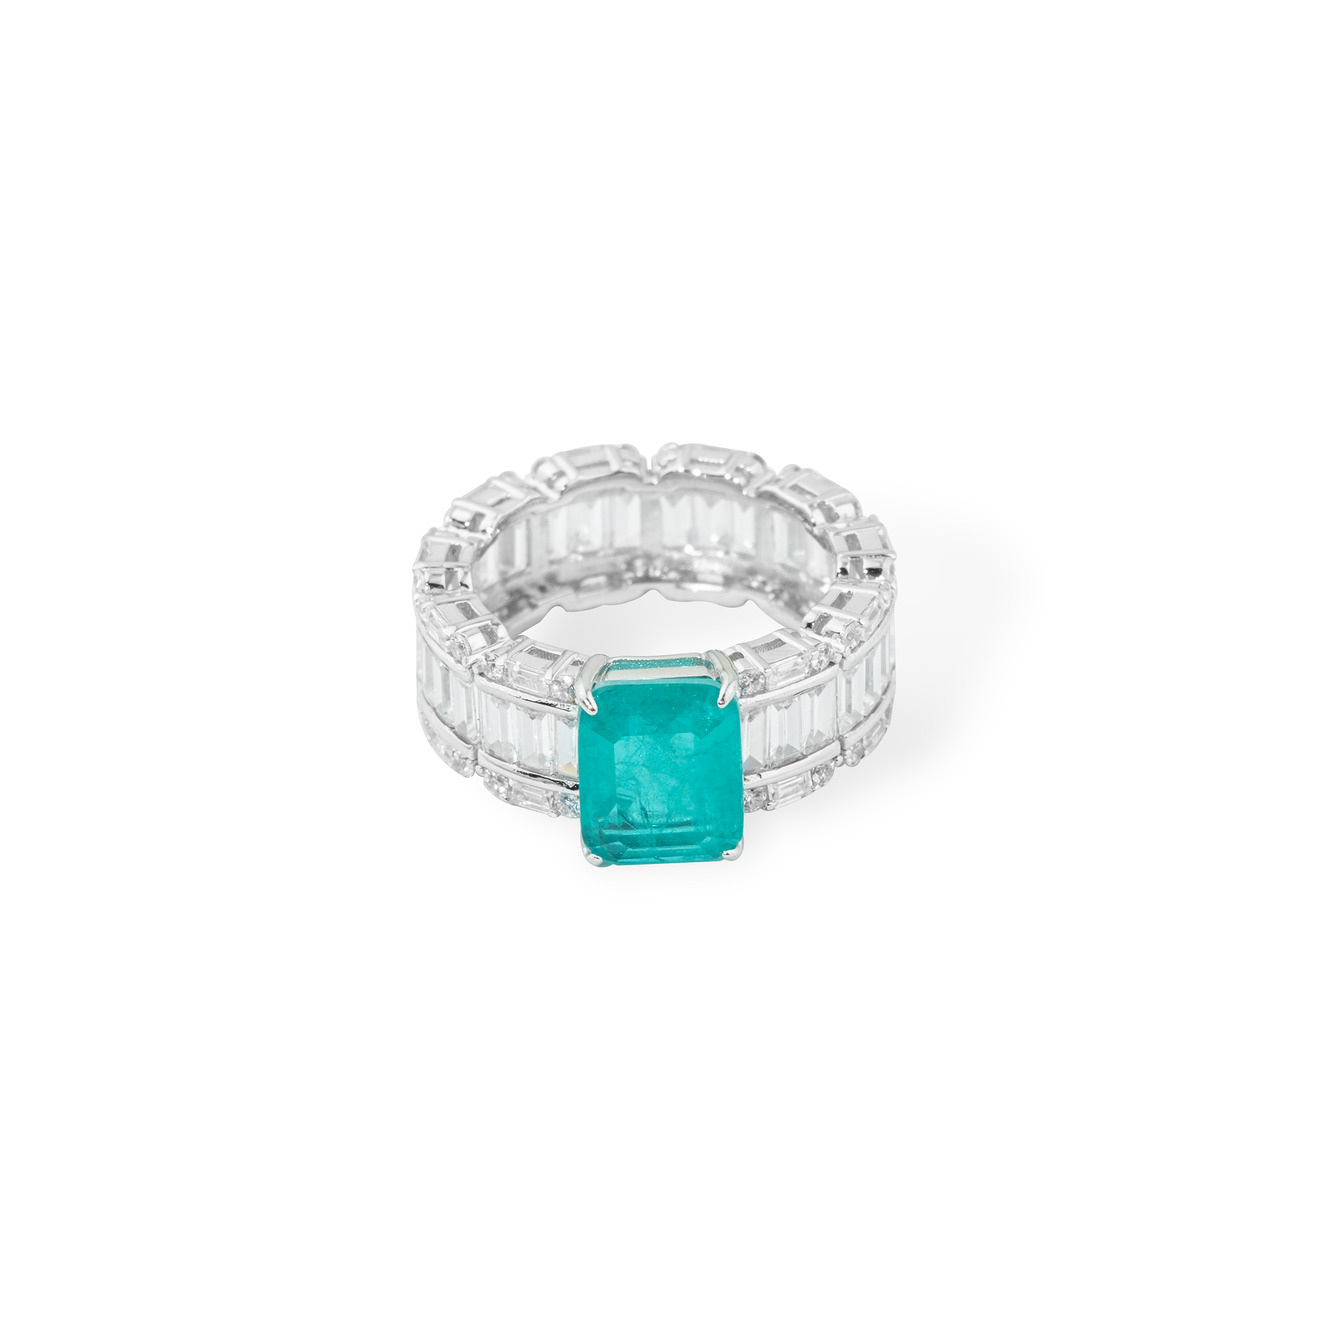 Holy Silver Серебряное кольцо с зеленым кристаллом и паве из белых кристаллов огранки багет